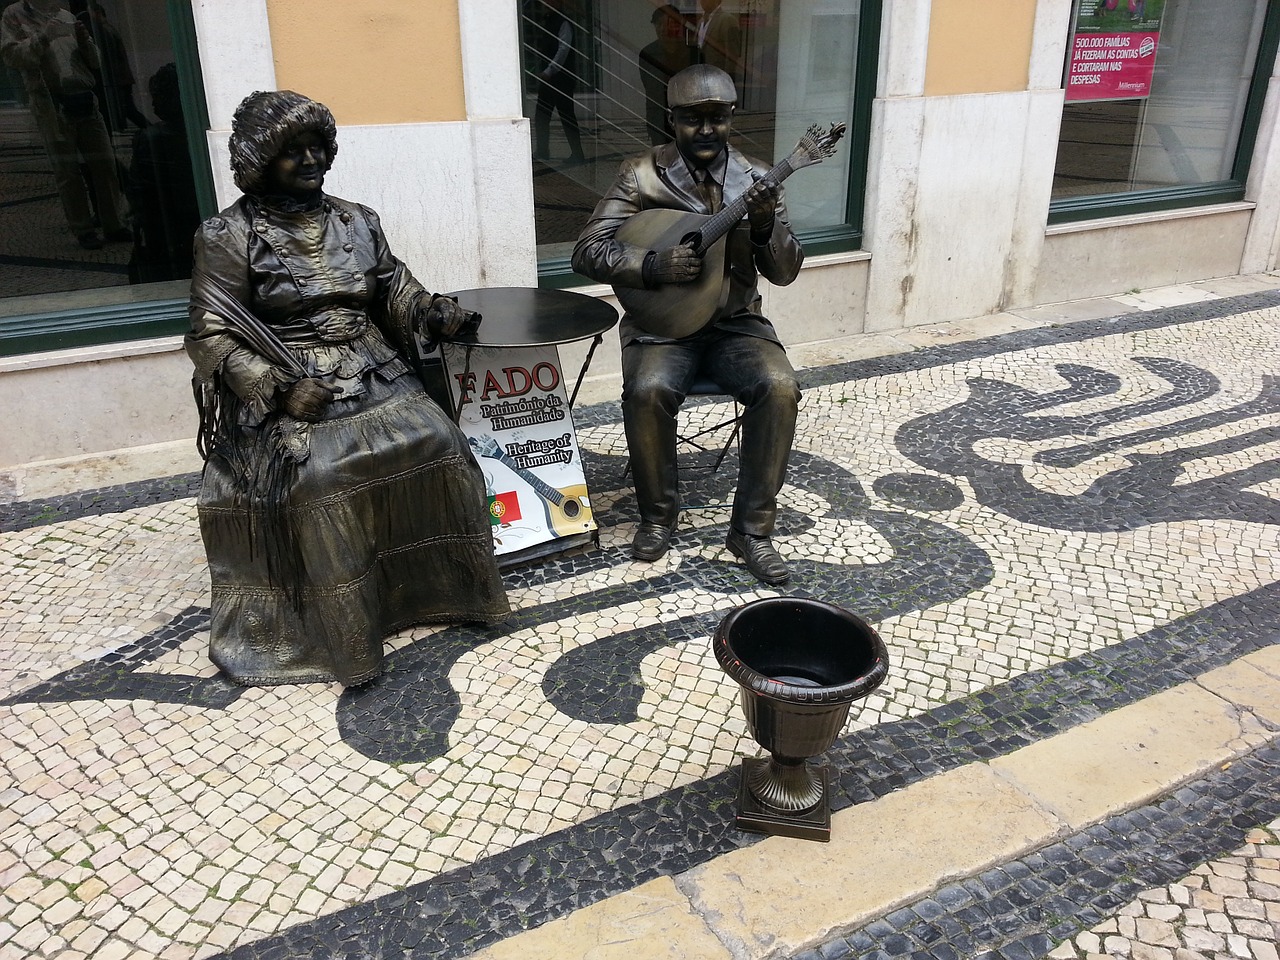 Fado Lisbonne